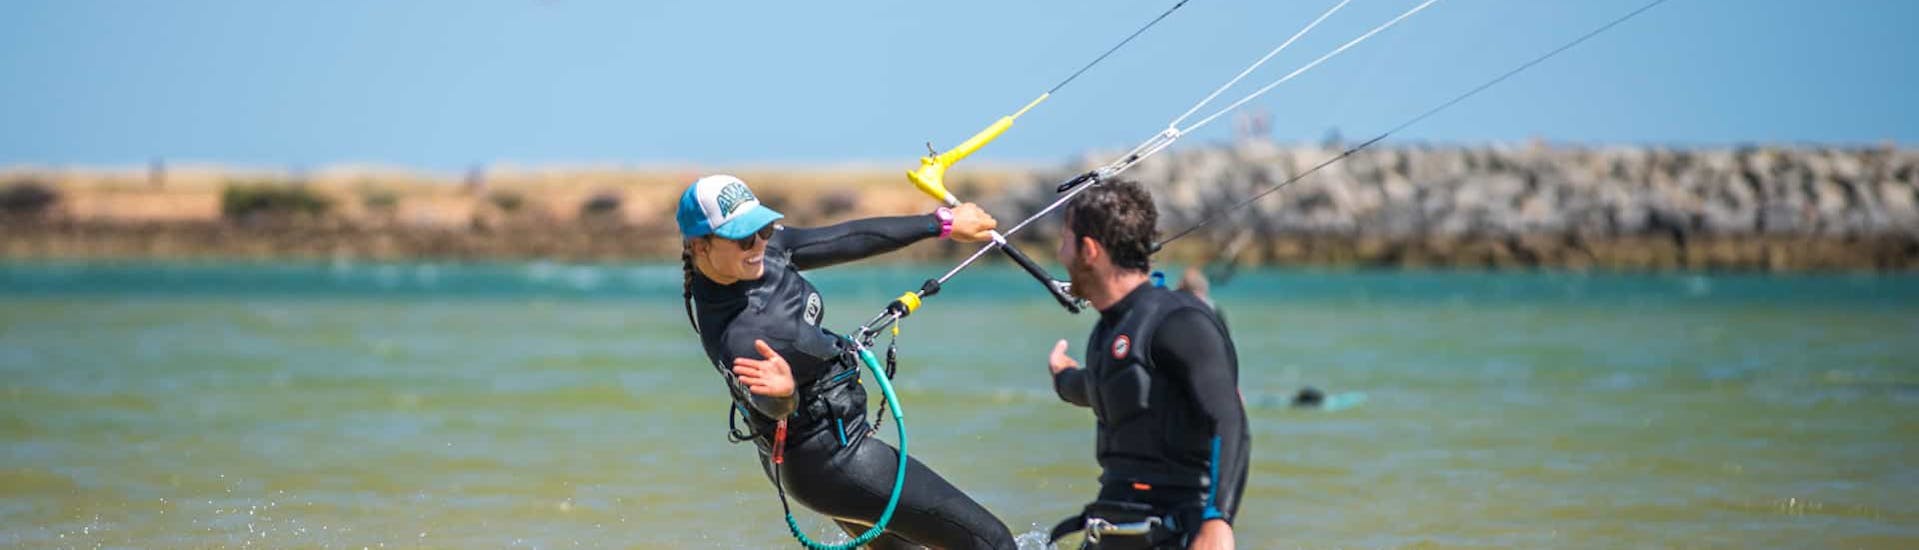 Een instructeur die lesgeeft tijdens de Semi Privélessen Kitesurfen die worden georganiseerd door Algarve Watersports.